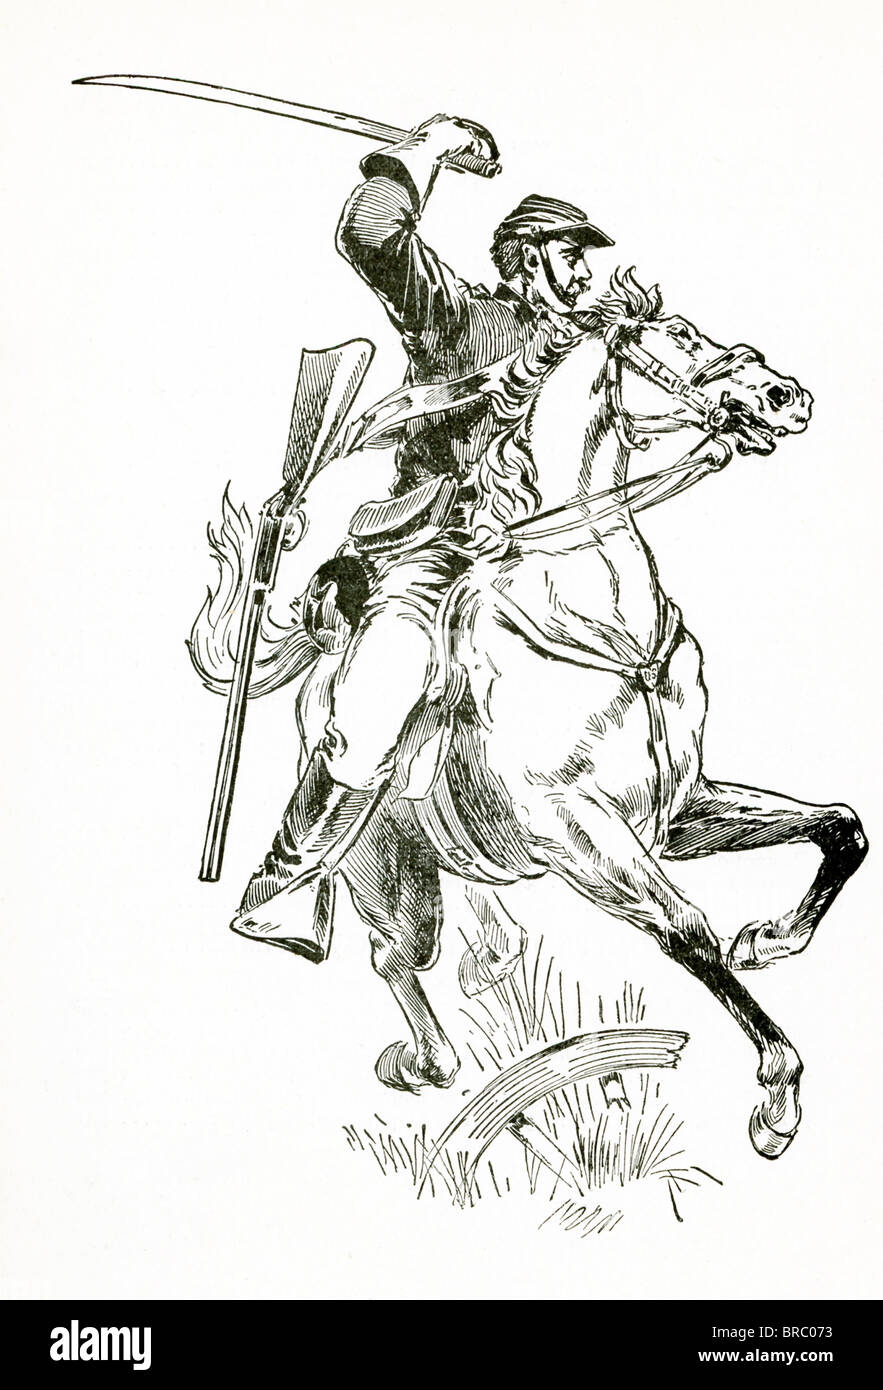 Un chef de cavalerie militaire durant la guerre civile (1861-1865) amène une accusation - l'épée à la main et un fusil. Banque D'Images